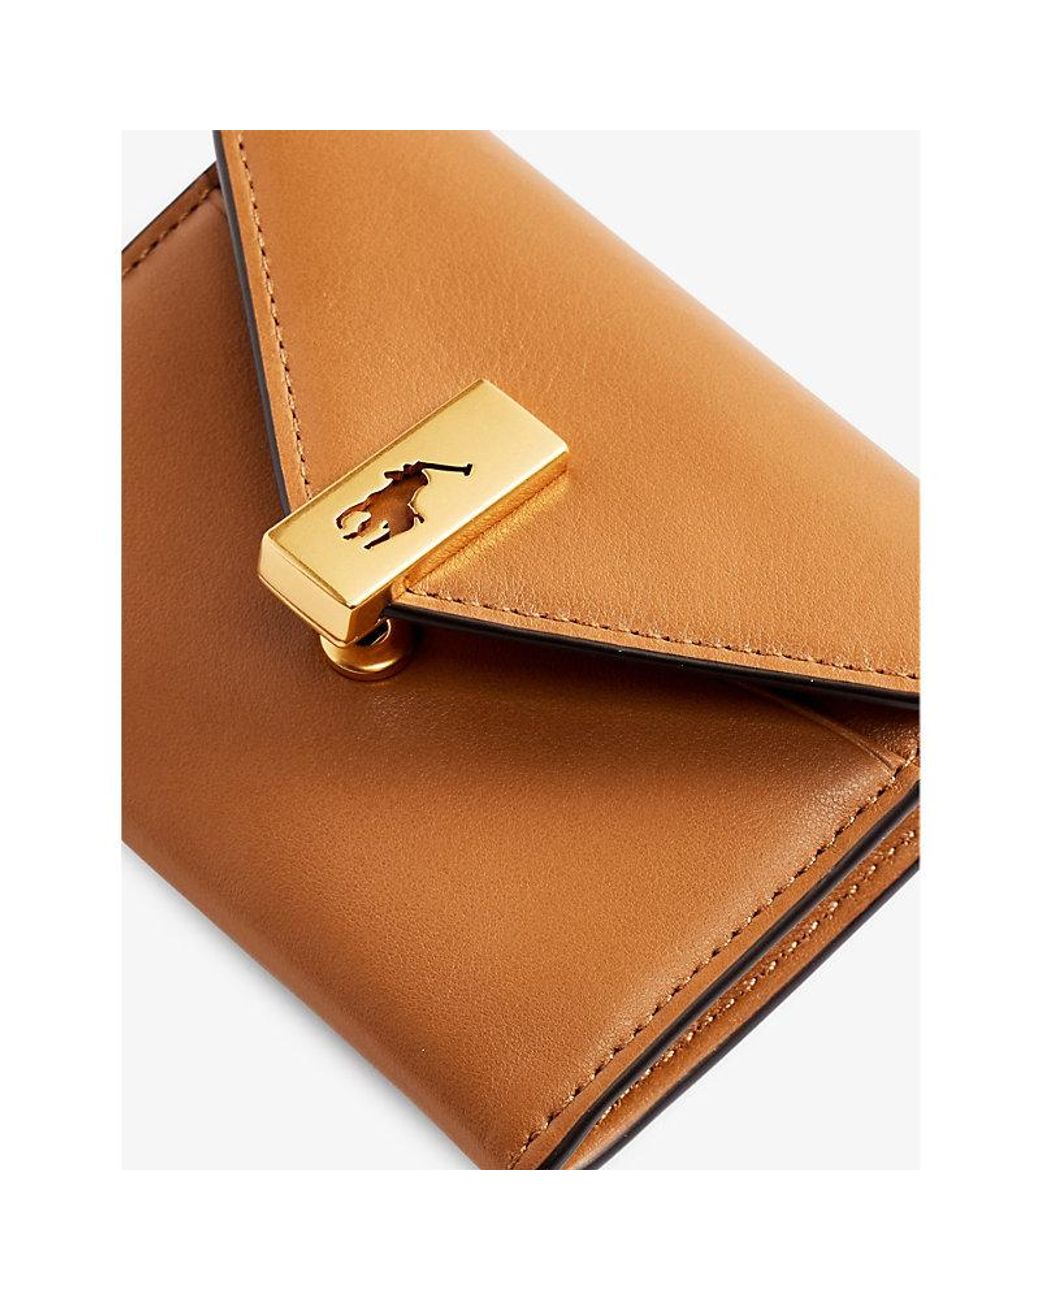 Lauren Ralph Lauren embossed-logo Zip Leather Wallet - Farfetch